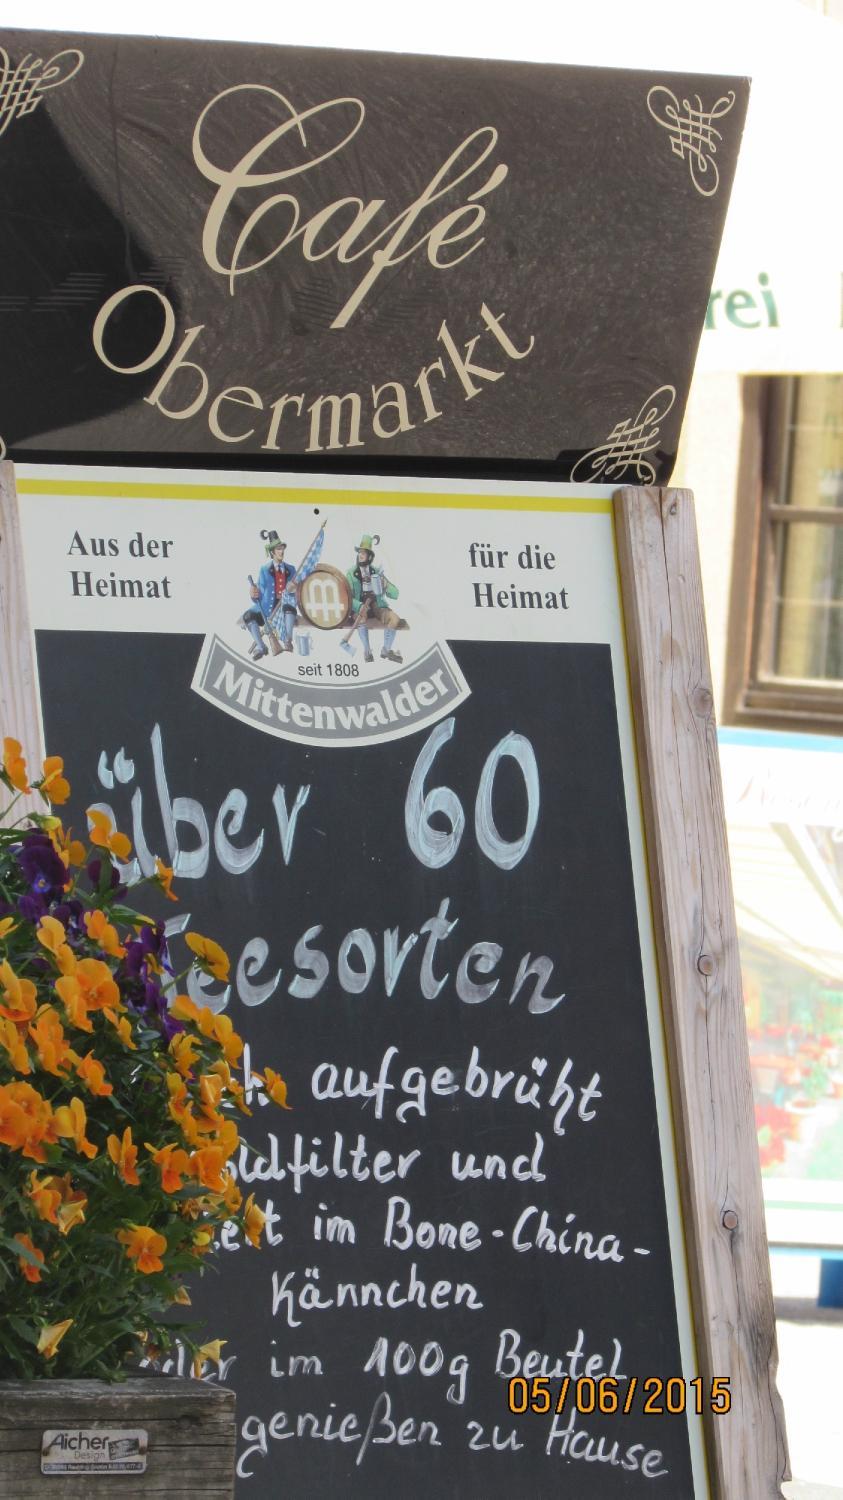 Cafe Obermarkt